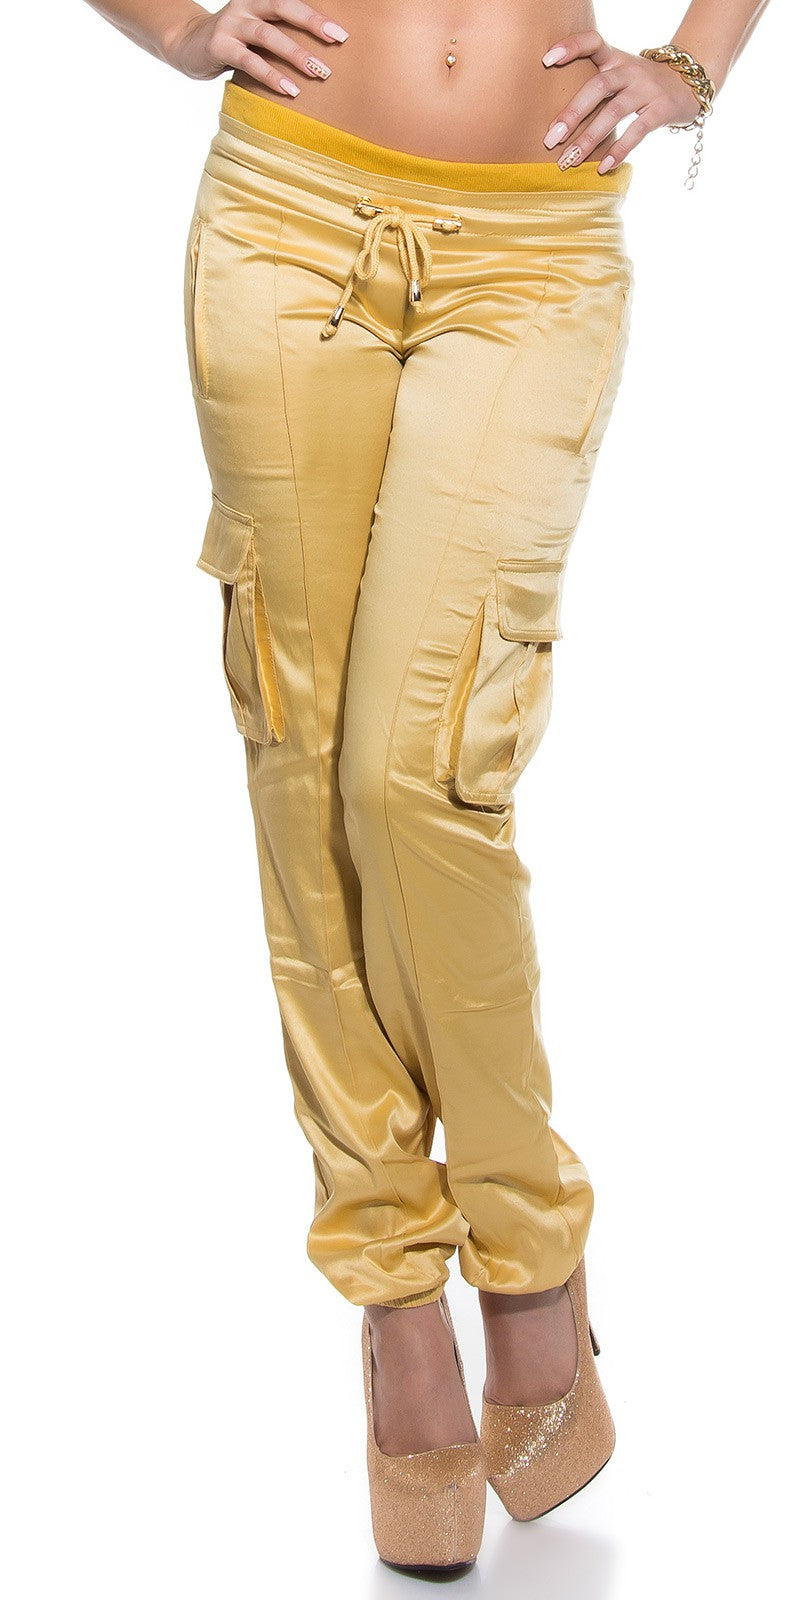 Pantaloni oro effetto raso con fascia elastica 0000H-18431